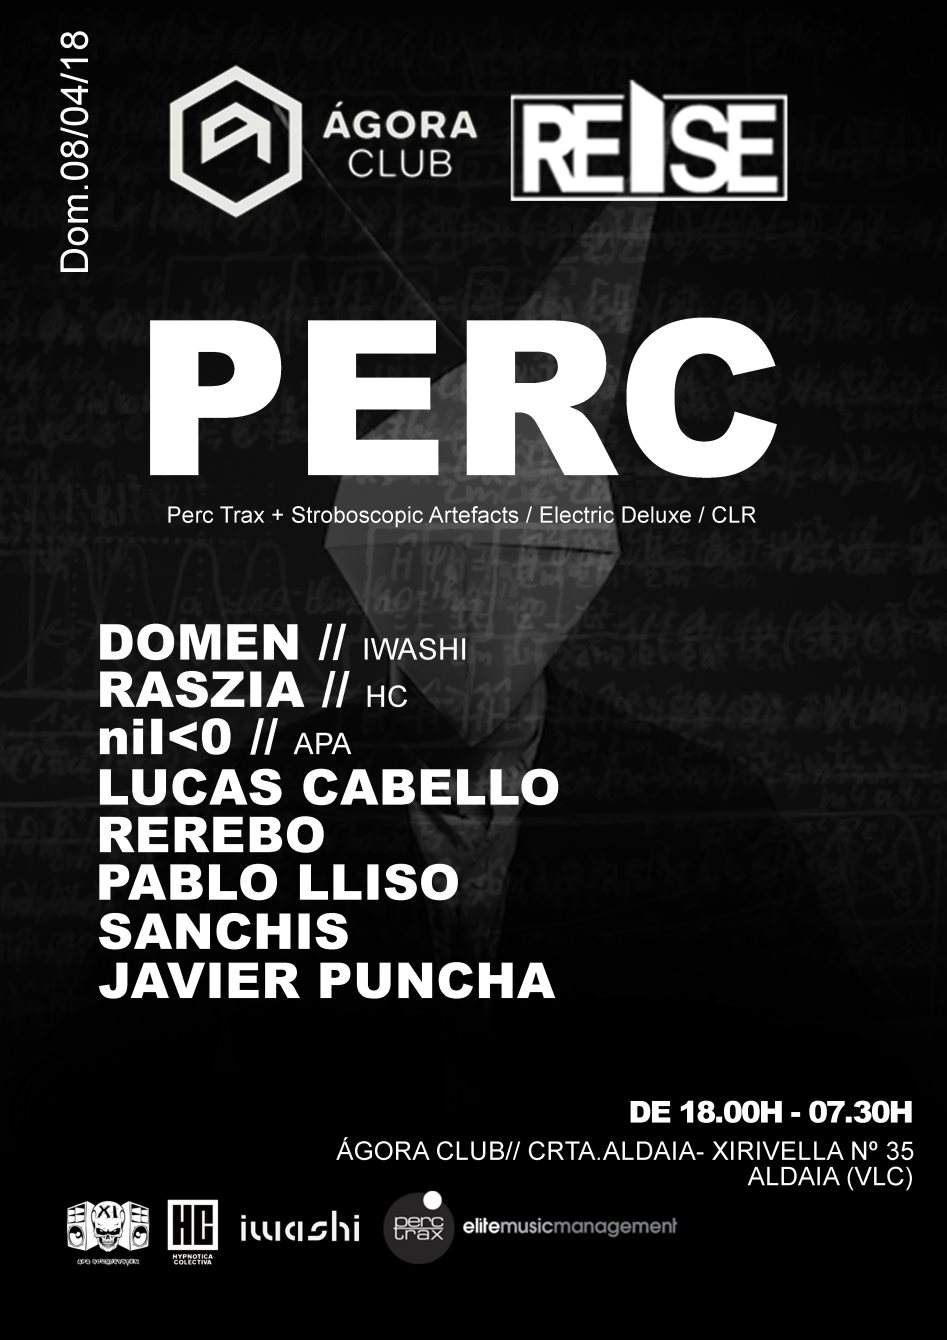 Reise Spain y Ágora Club presentan: Perc Dom - Página frontal